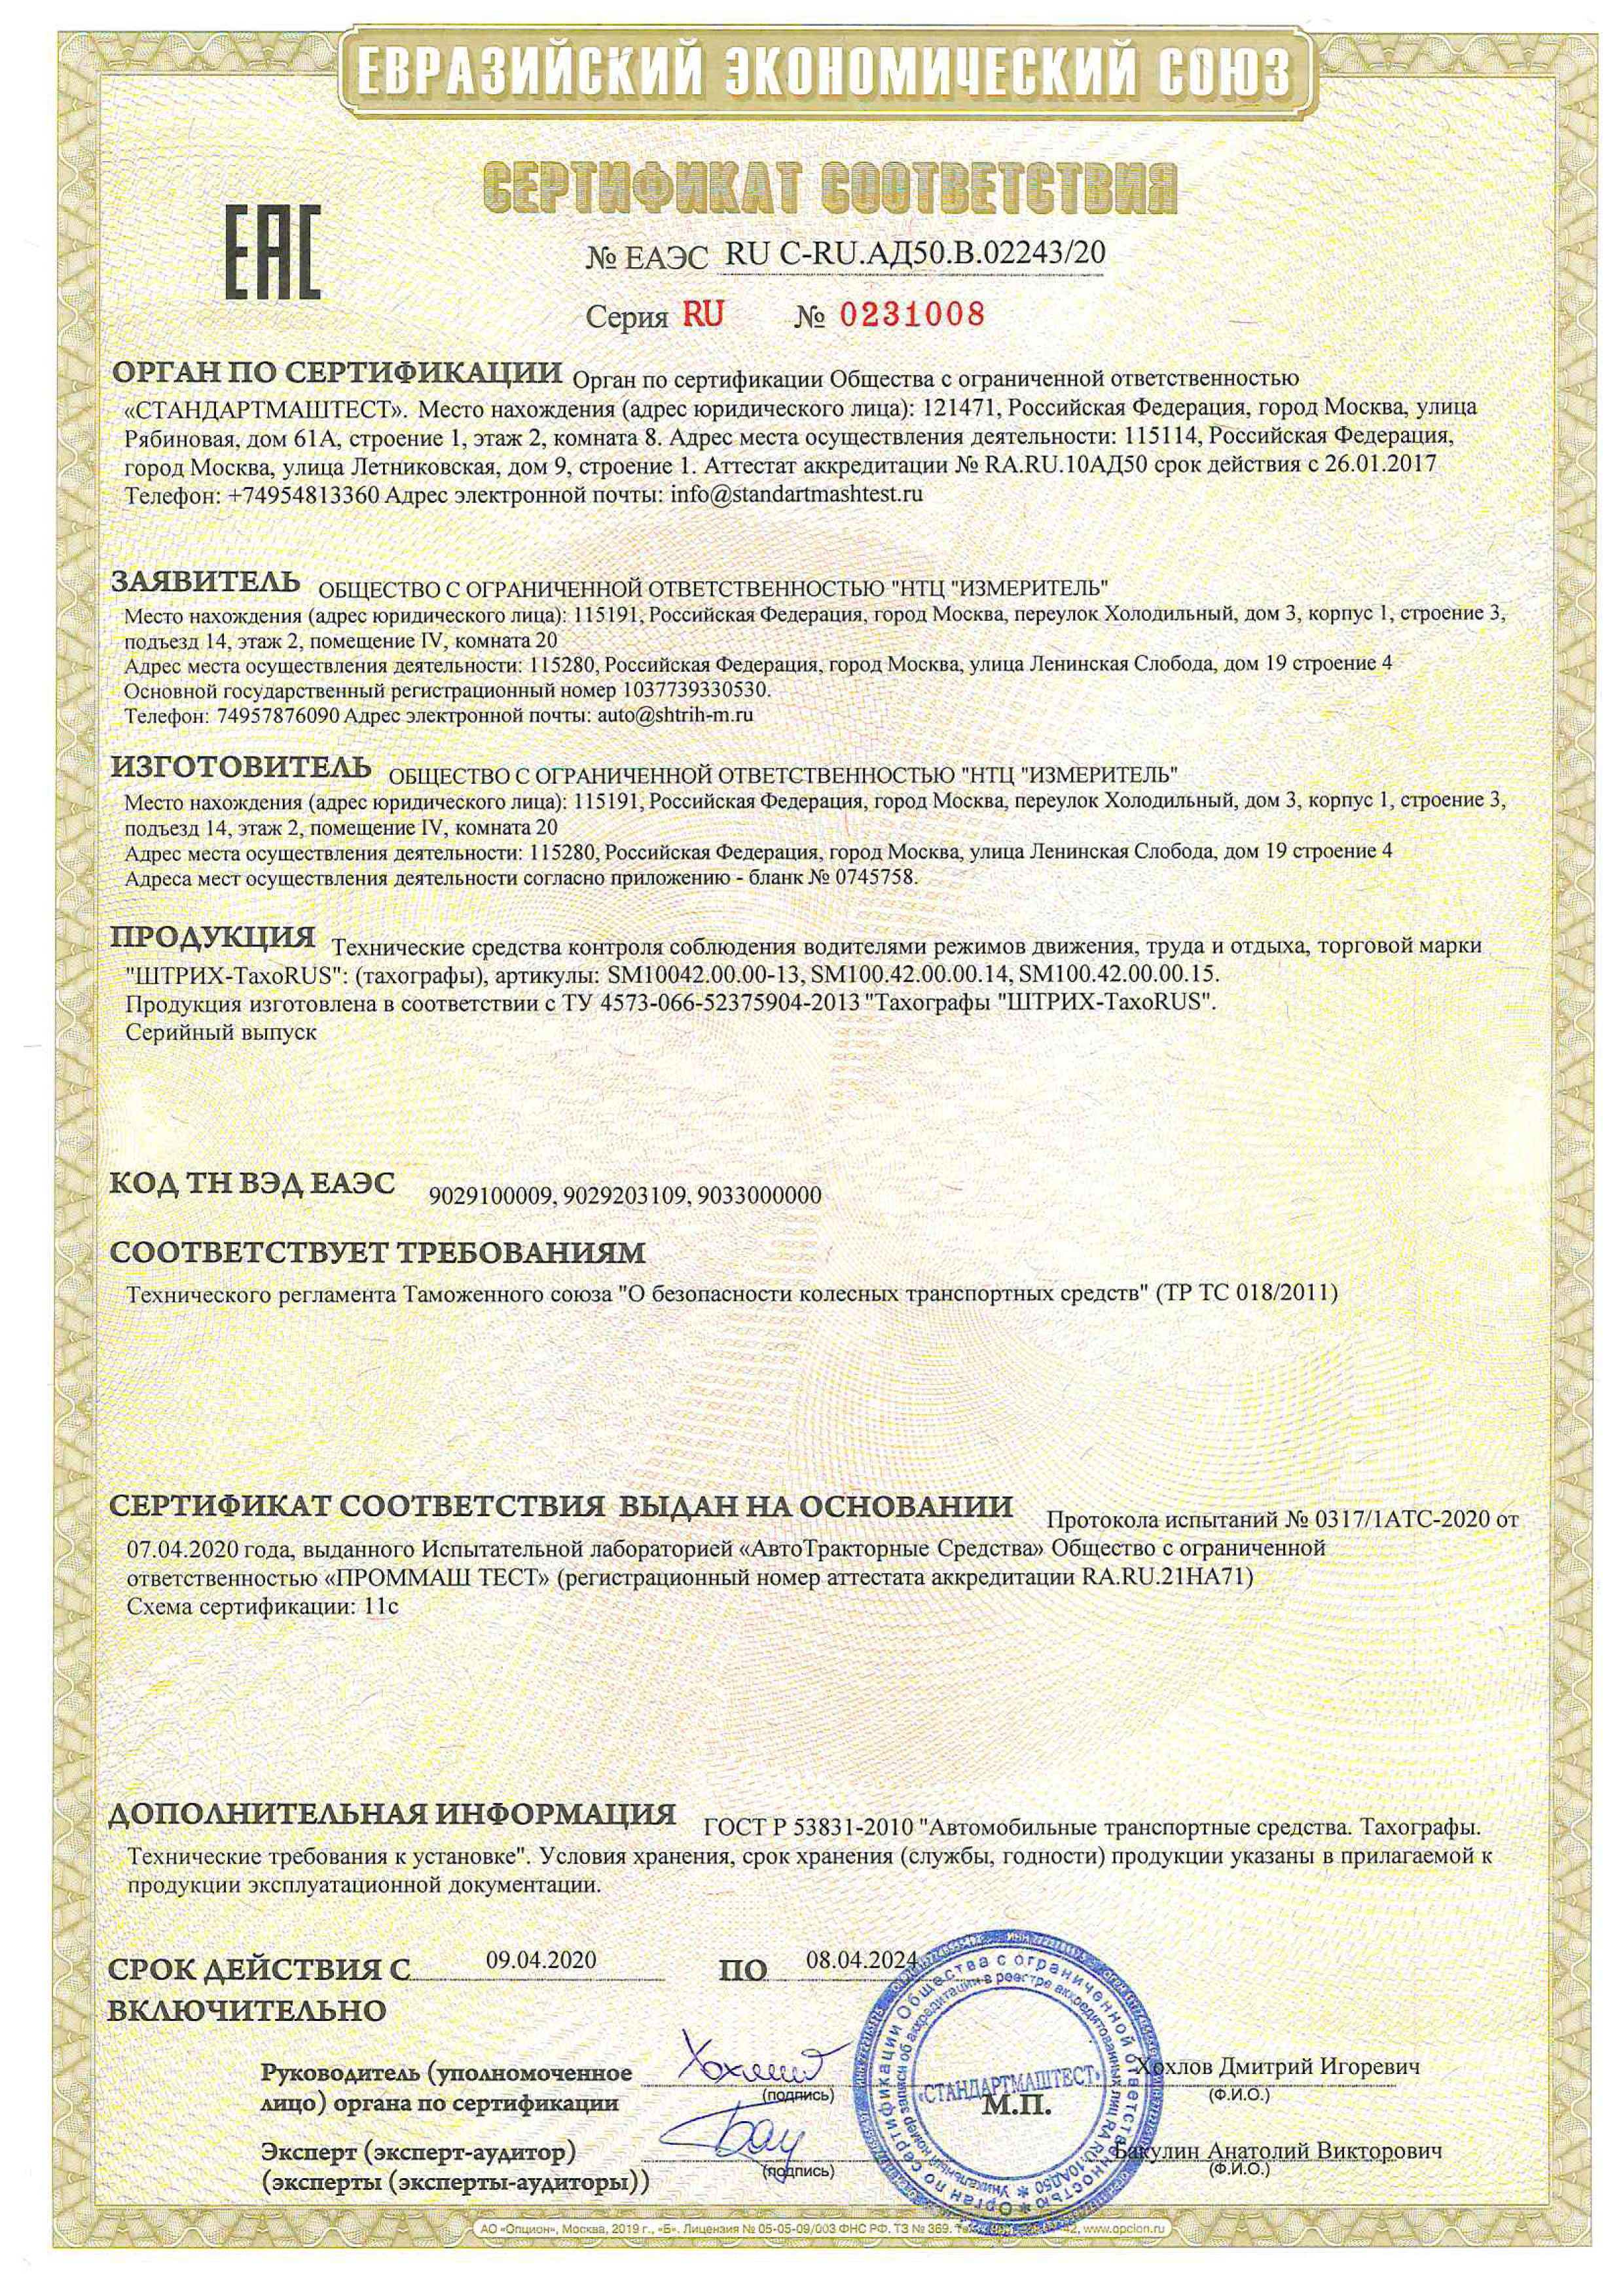 Сертификат соответствия техническому регламенту Таможенного Союза 018/2011